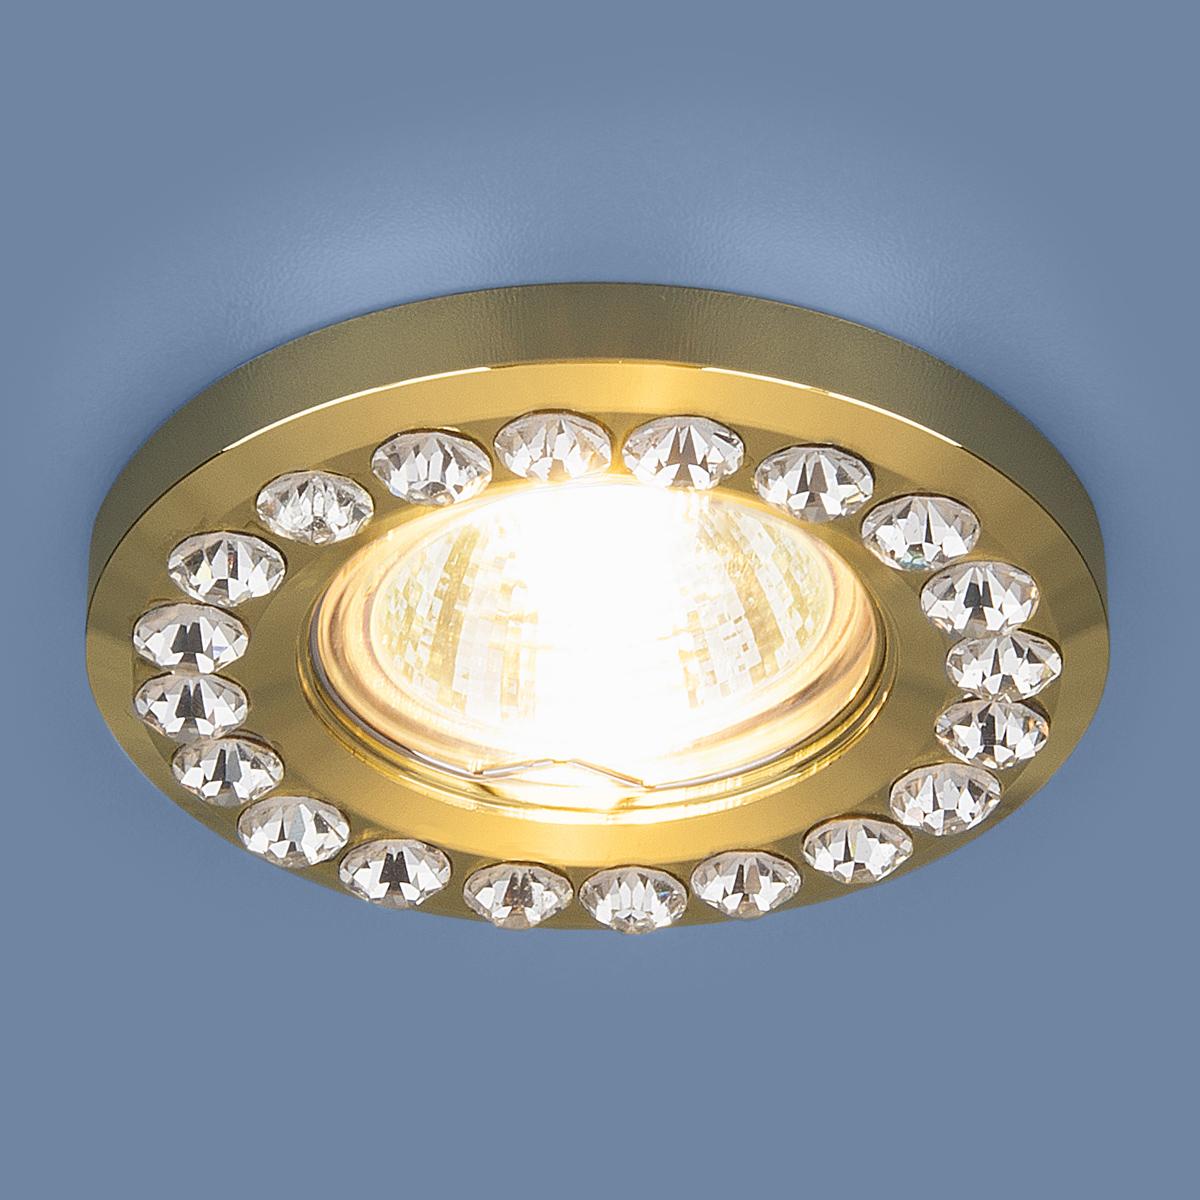 

Встраиваемый светильник Elektrostandart Точечный светильник 8331 MR16 GD/CL золото/прозрачный